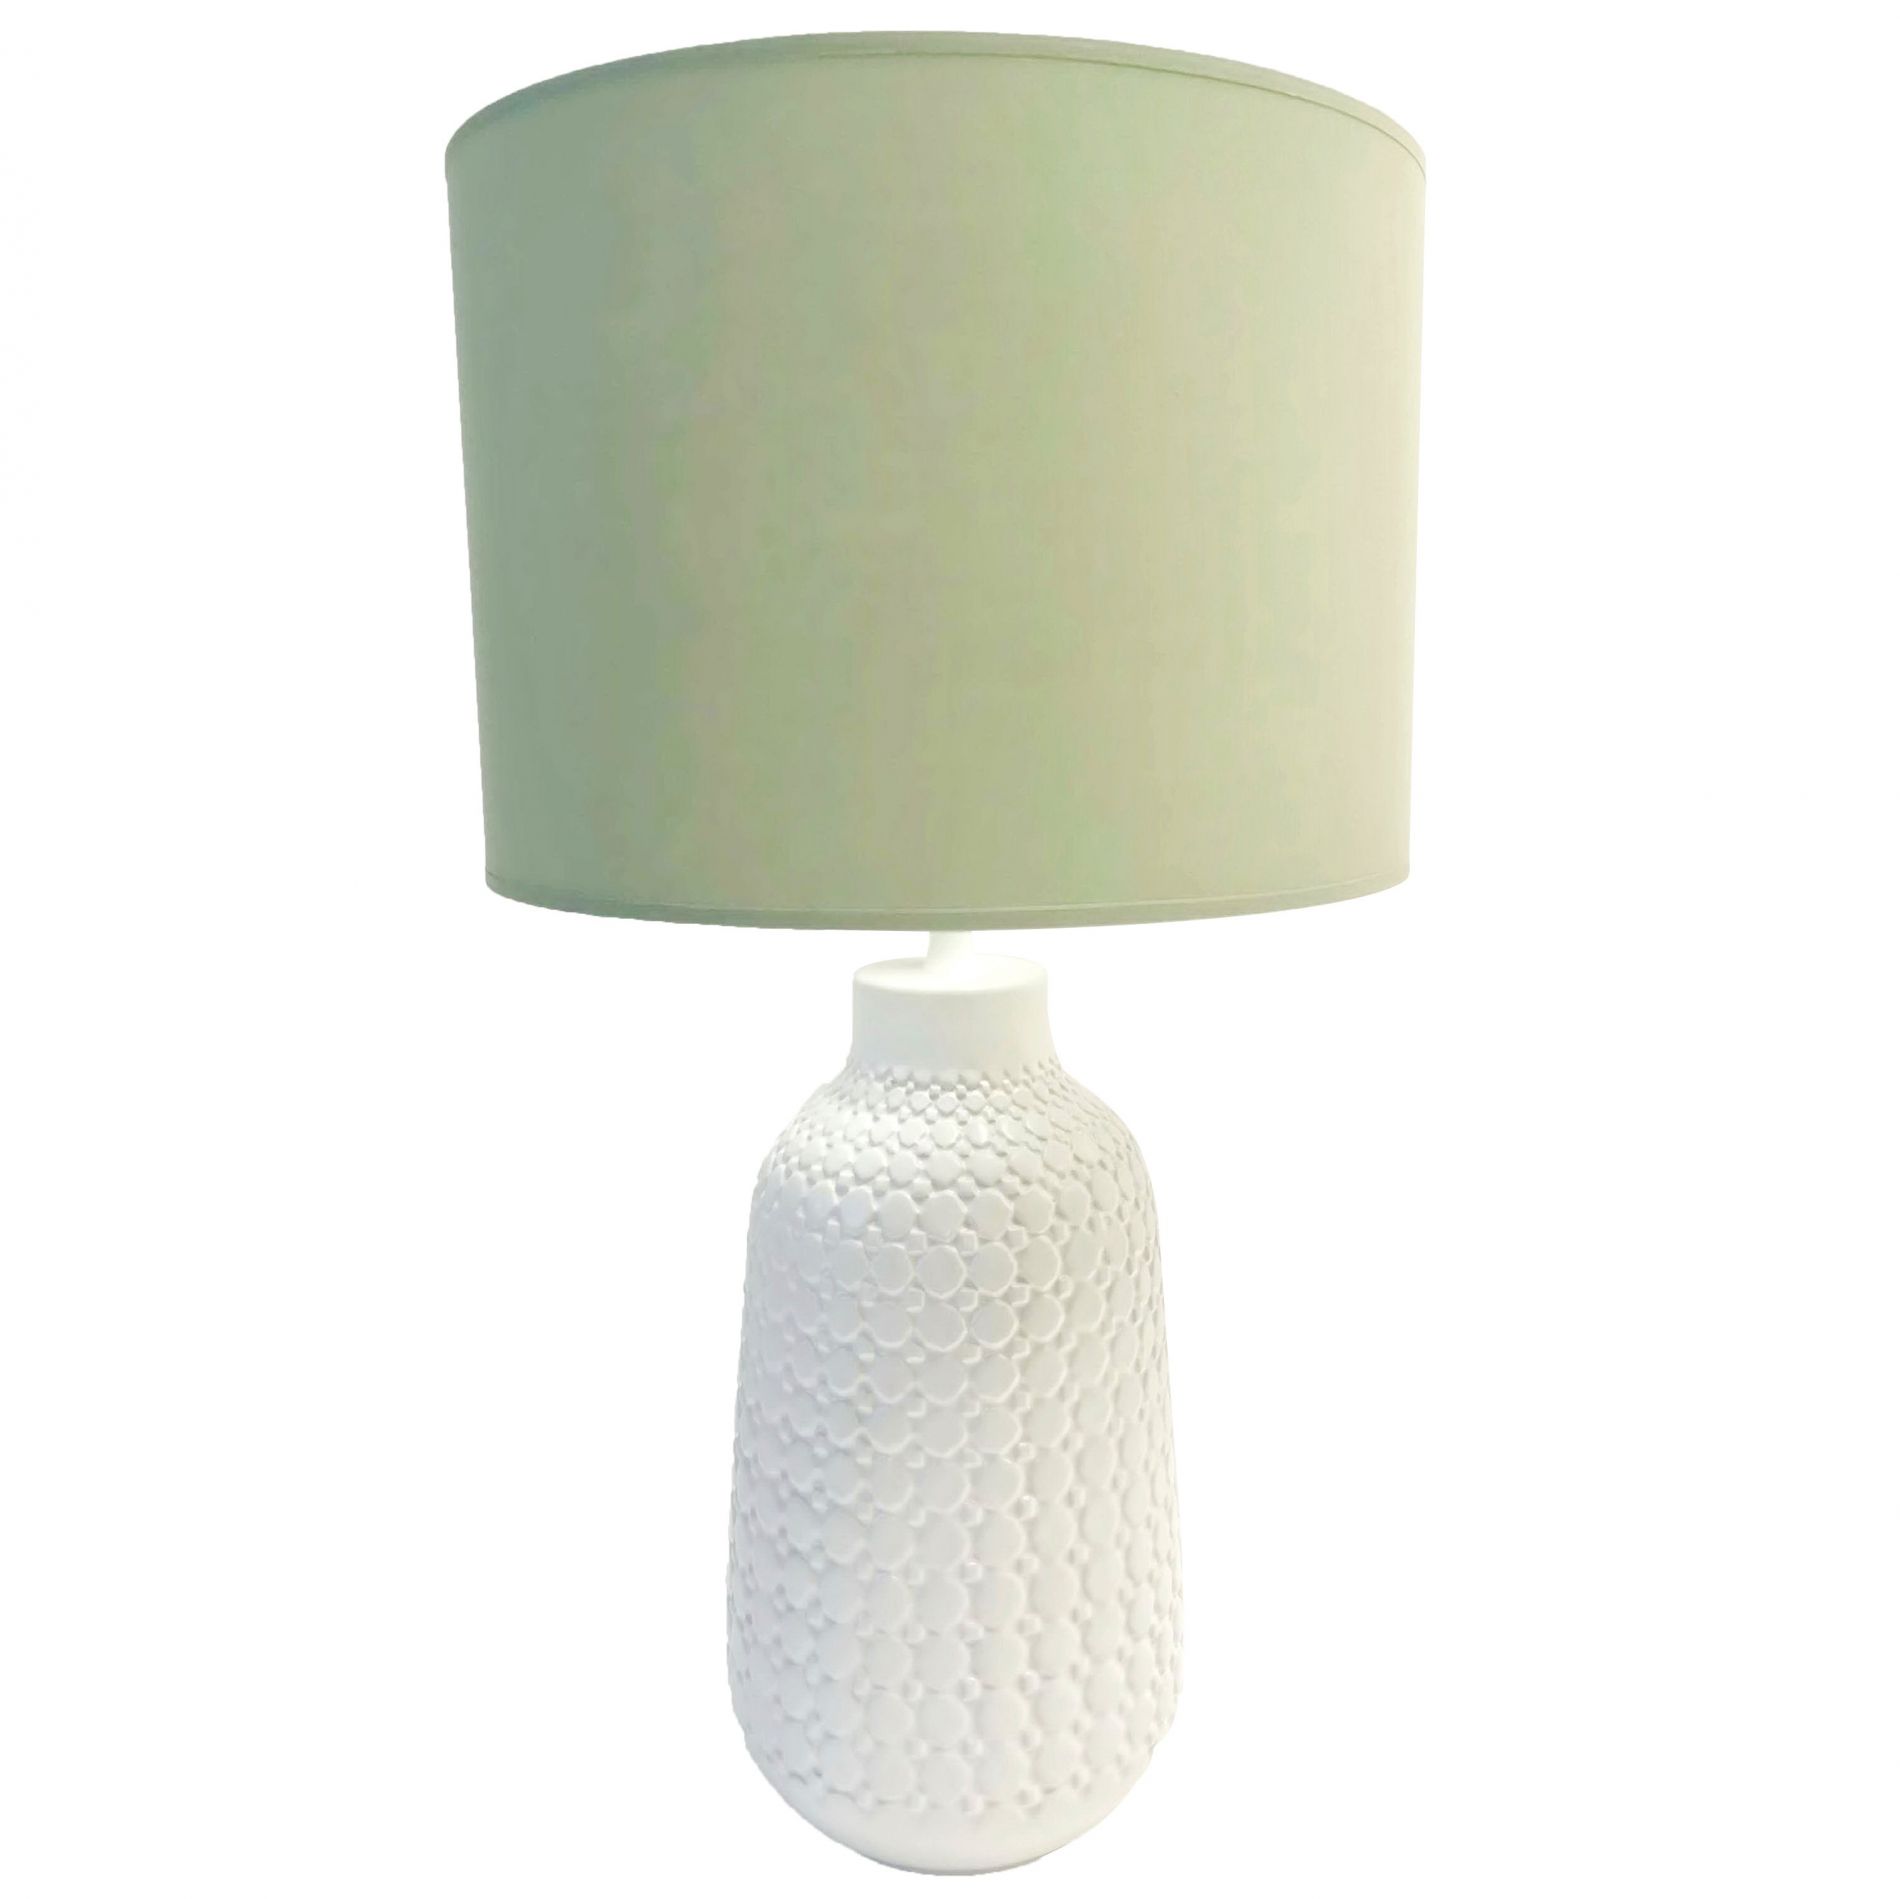 Lampe à poser URBAN (H35cm) en céramique blanc abat-jour en tissu vert